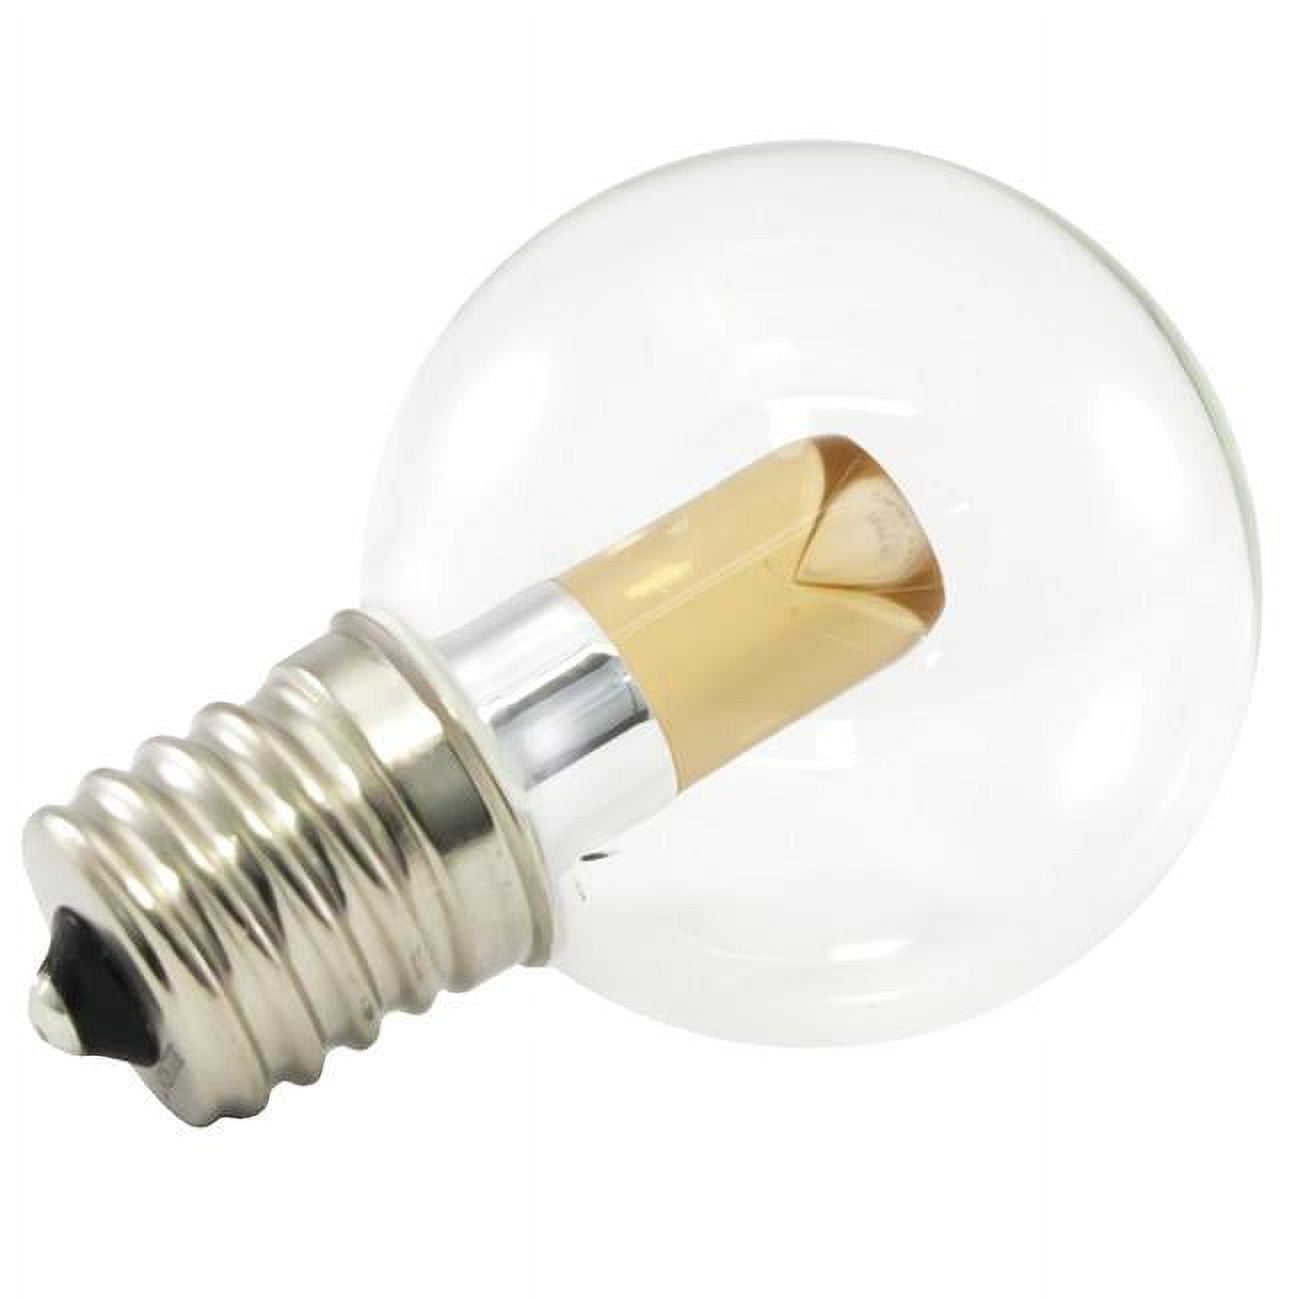 Americanlighting Pg40-e17-uww Dimmable Led Globe Light Bulbs - 1 Watt, 120 V - 2400k, Ultra Warm White